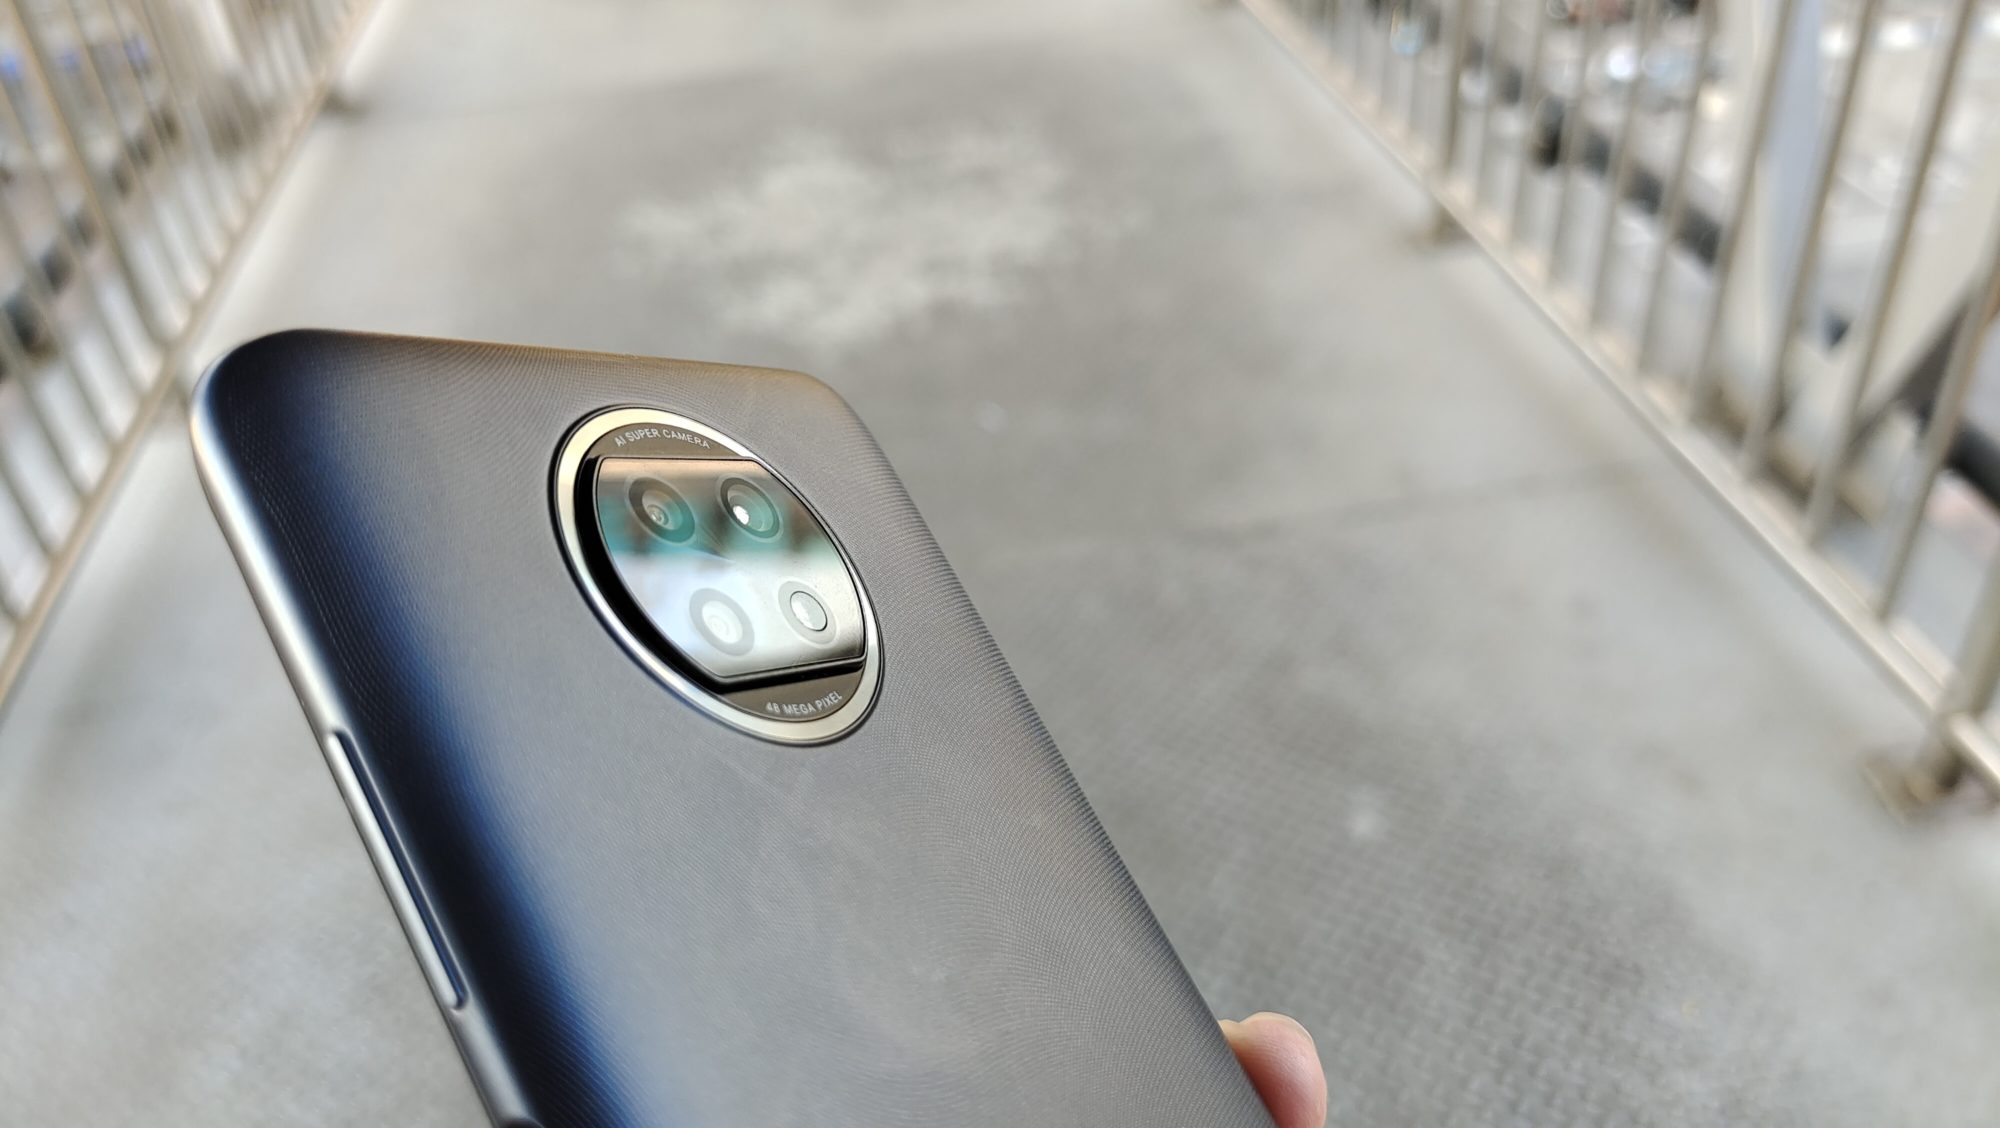 รีวิว Redmi Note 9T สมาร์ทโฟน 5G สองซิมราคาเริ่มต้น 5,999 บาท ได้ลำโพงคู่และแบตเตอรี่ 5,000 mAh พร้อมระบบชาร์จเร็วด้วย! 13